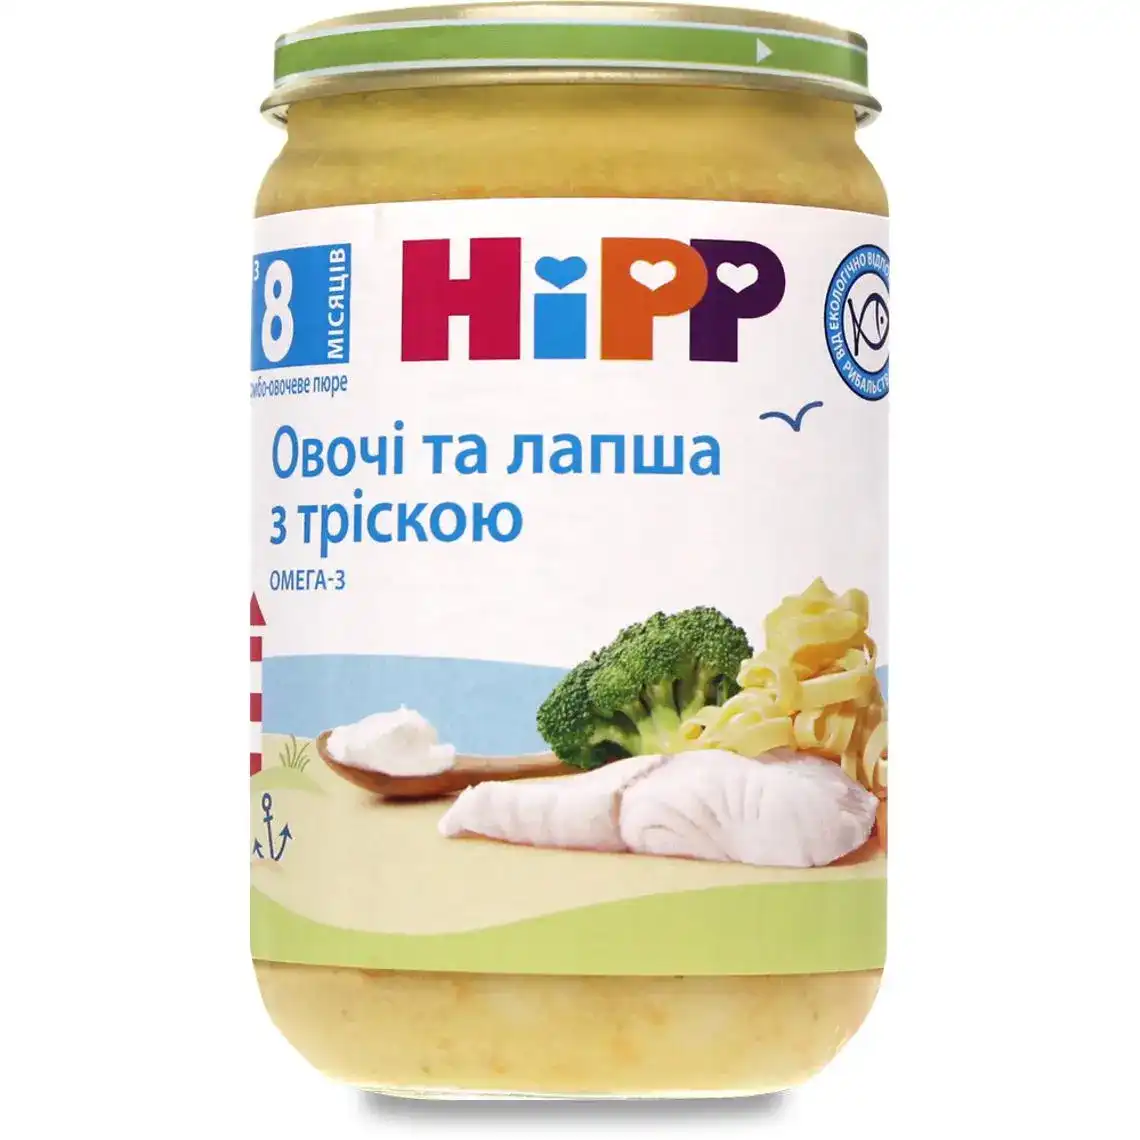 Пюре Hipp для дітей від 8 місяців овочі та локшина з тріскою 220 г 